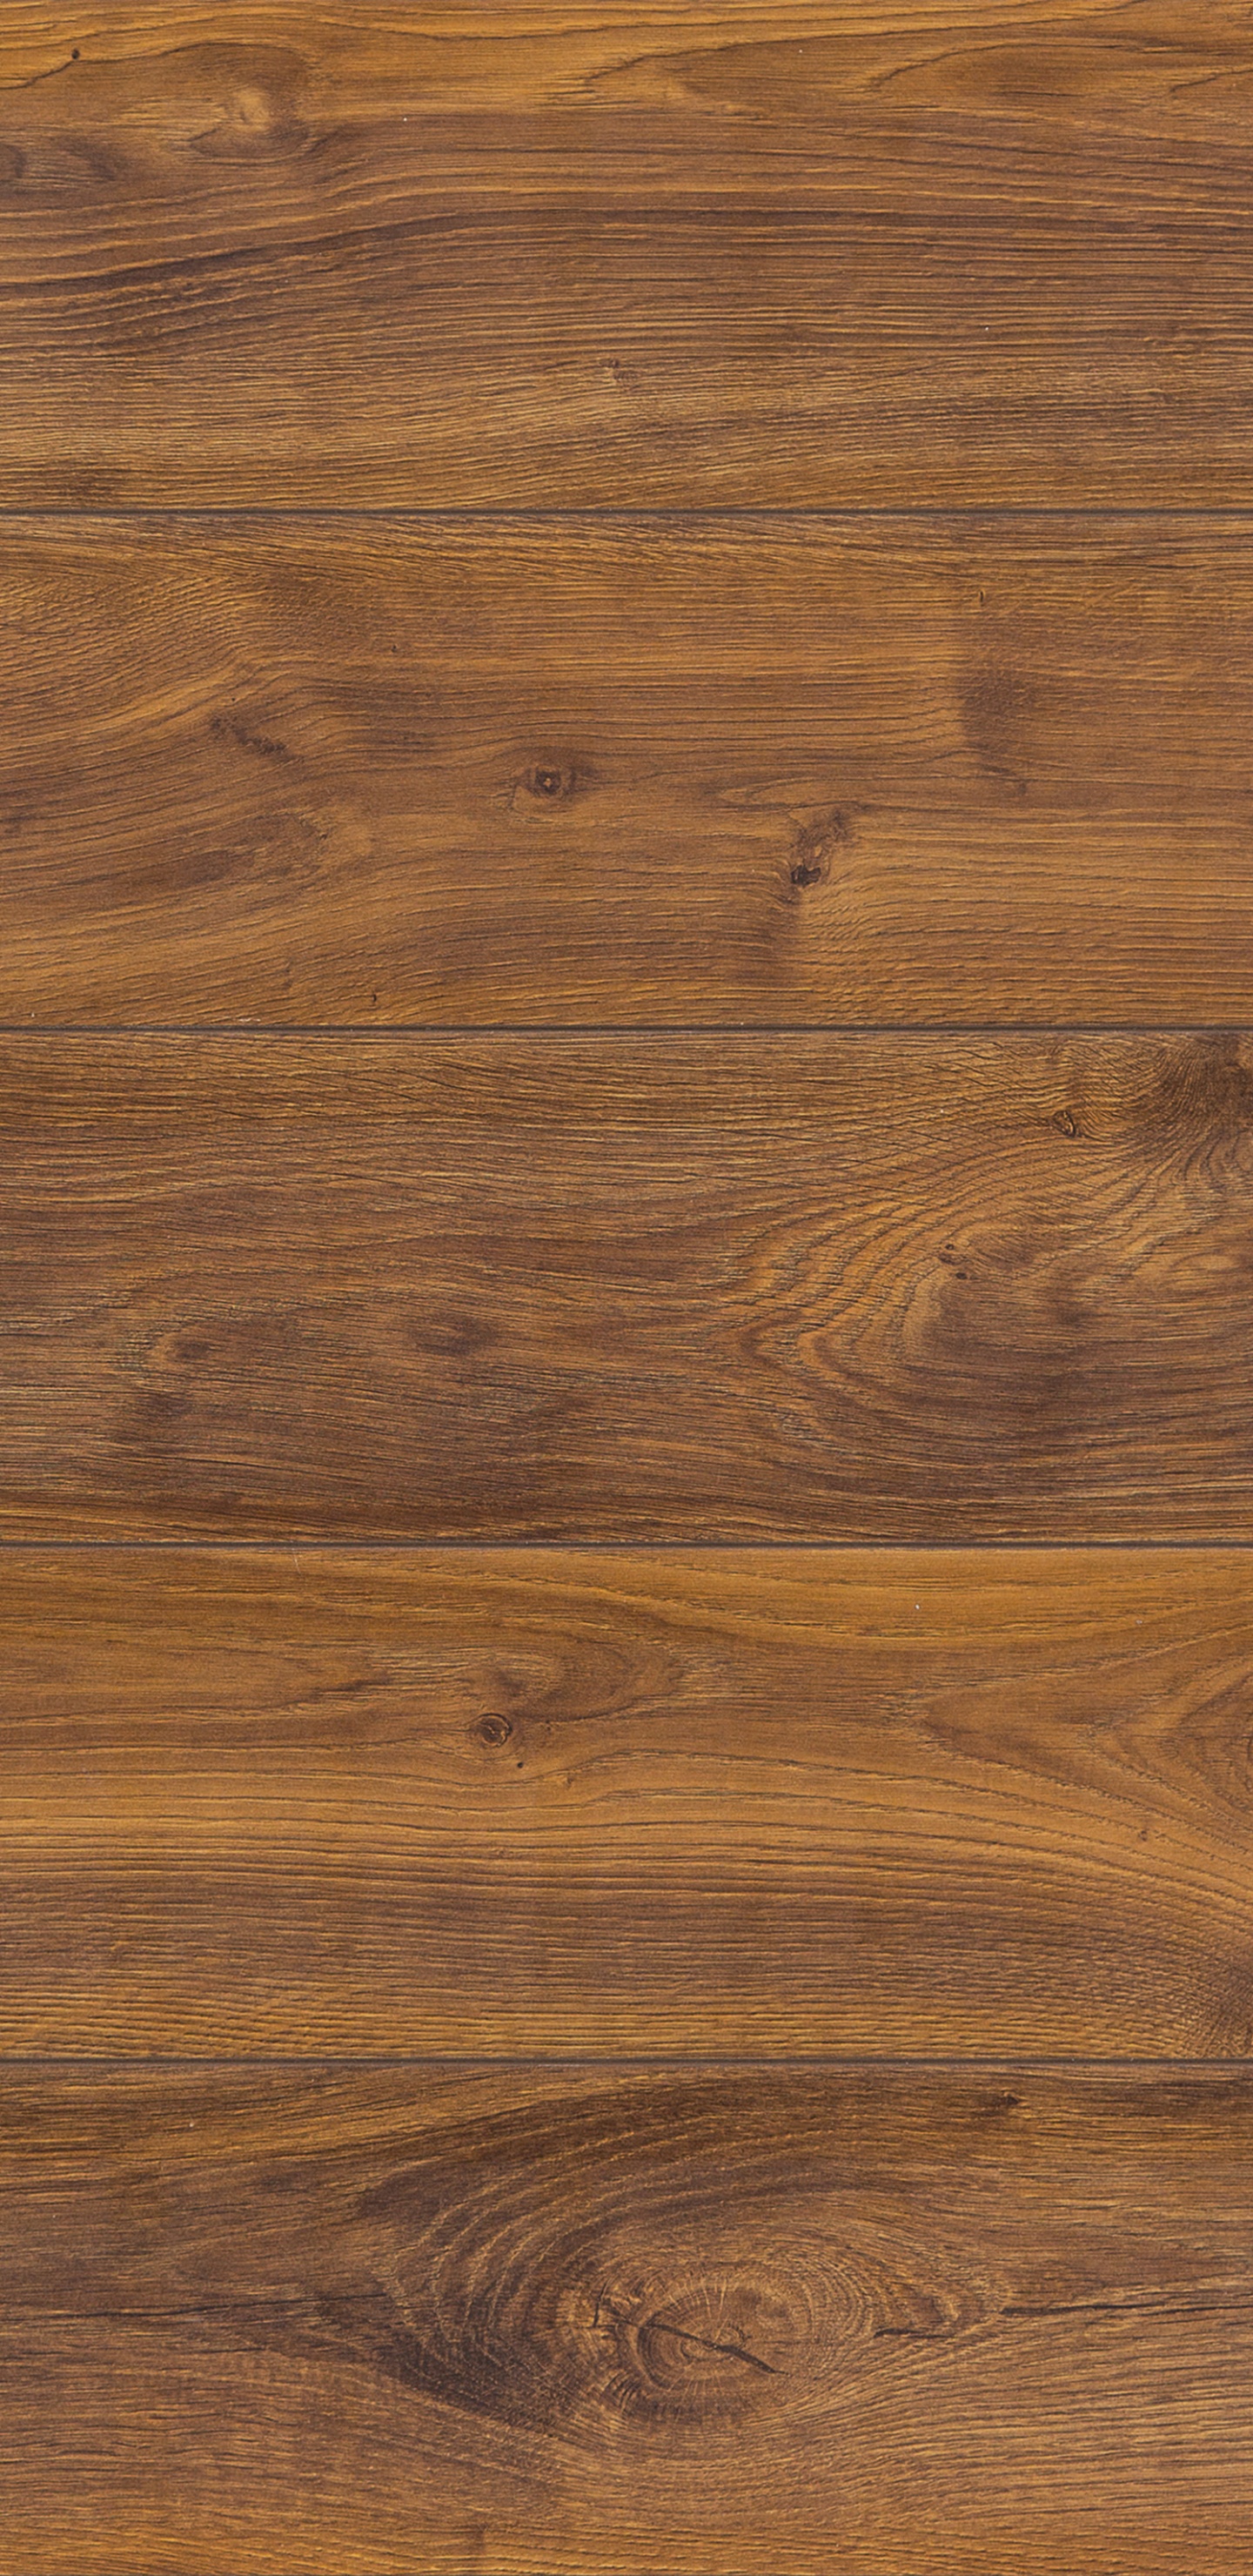 硬木, 地板, 木染色, 木地板, 木 壁纸 1440x2960 允许